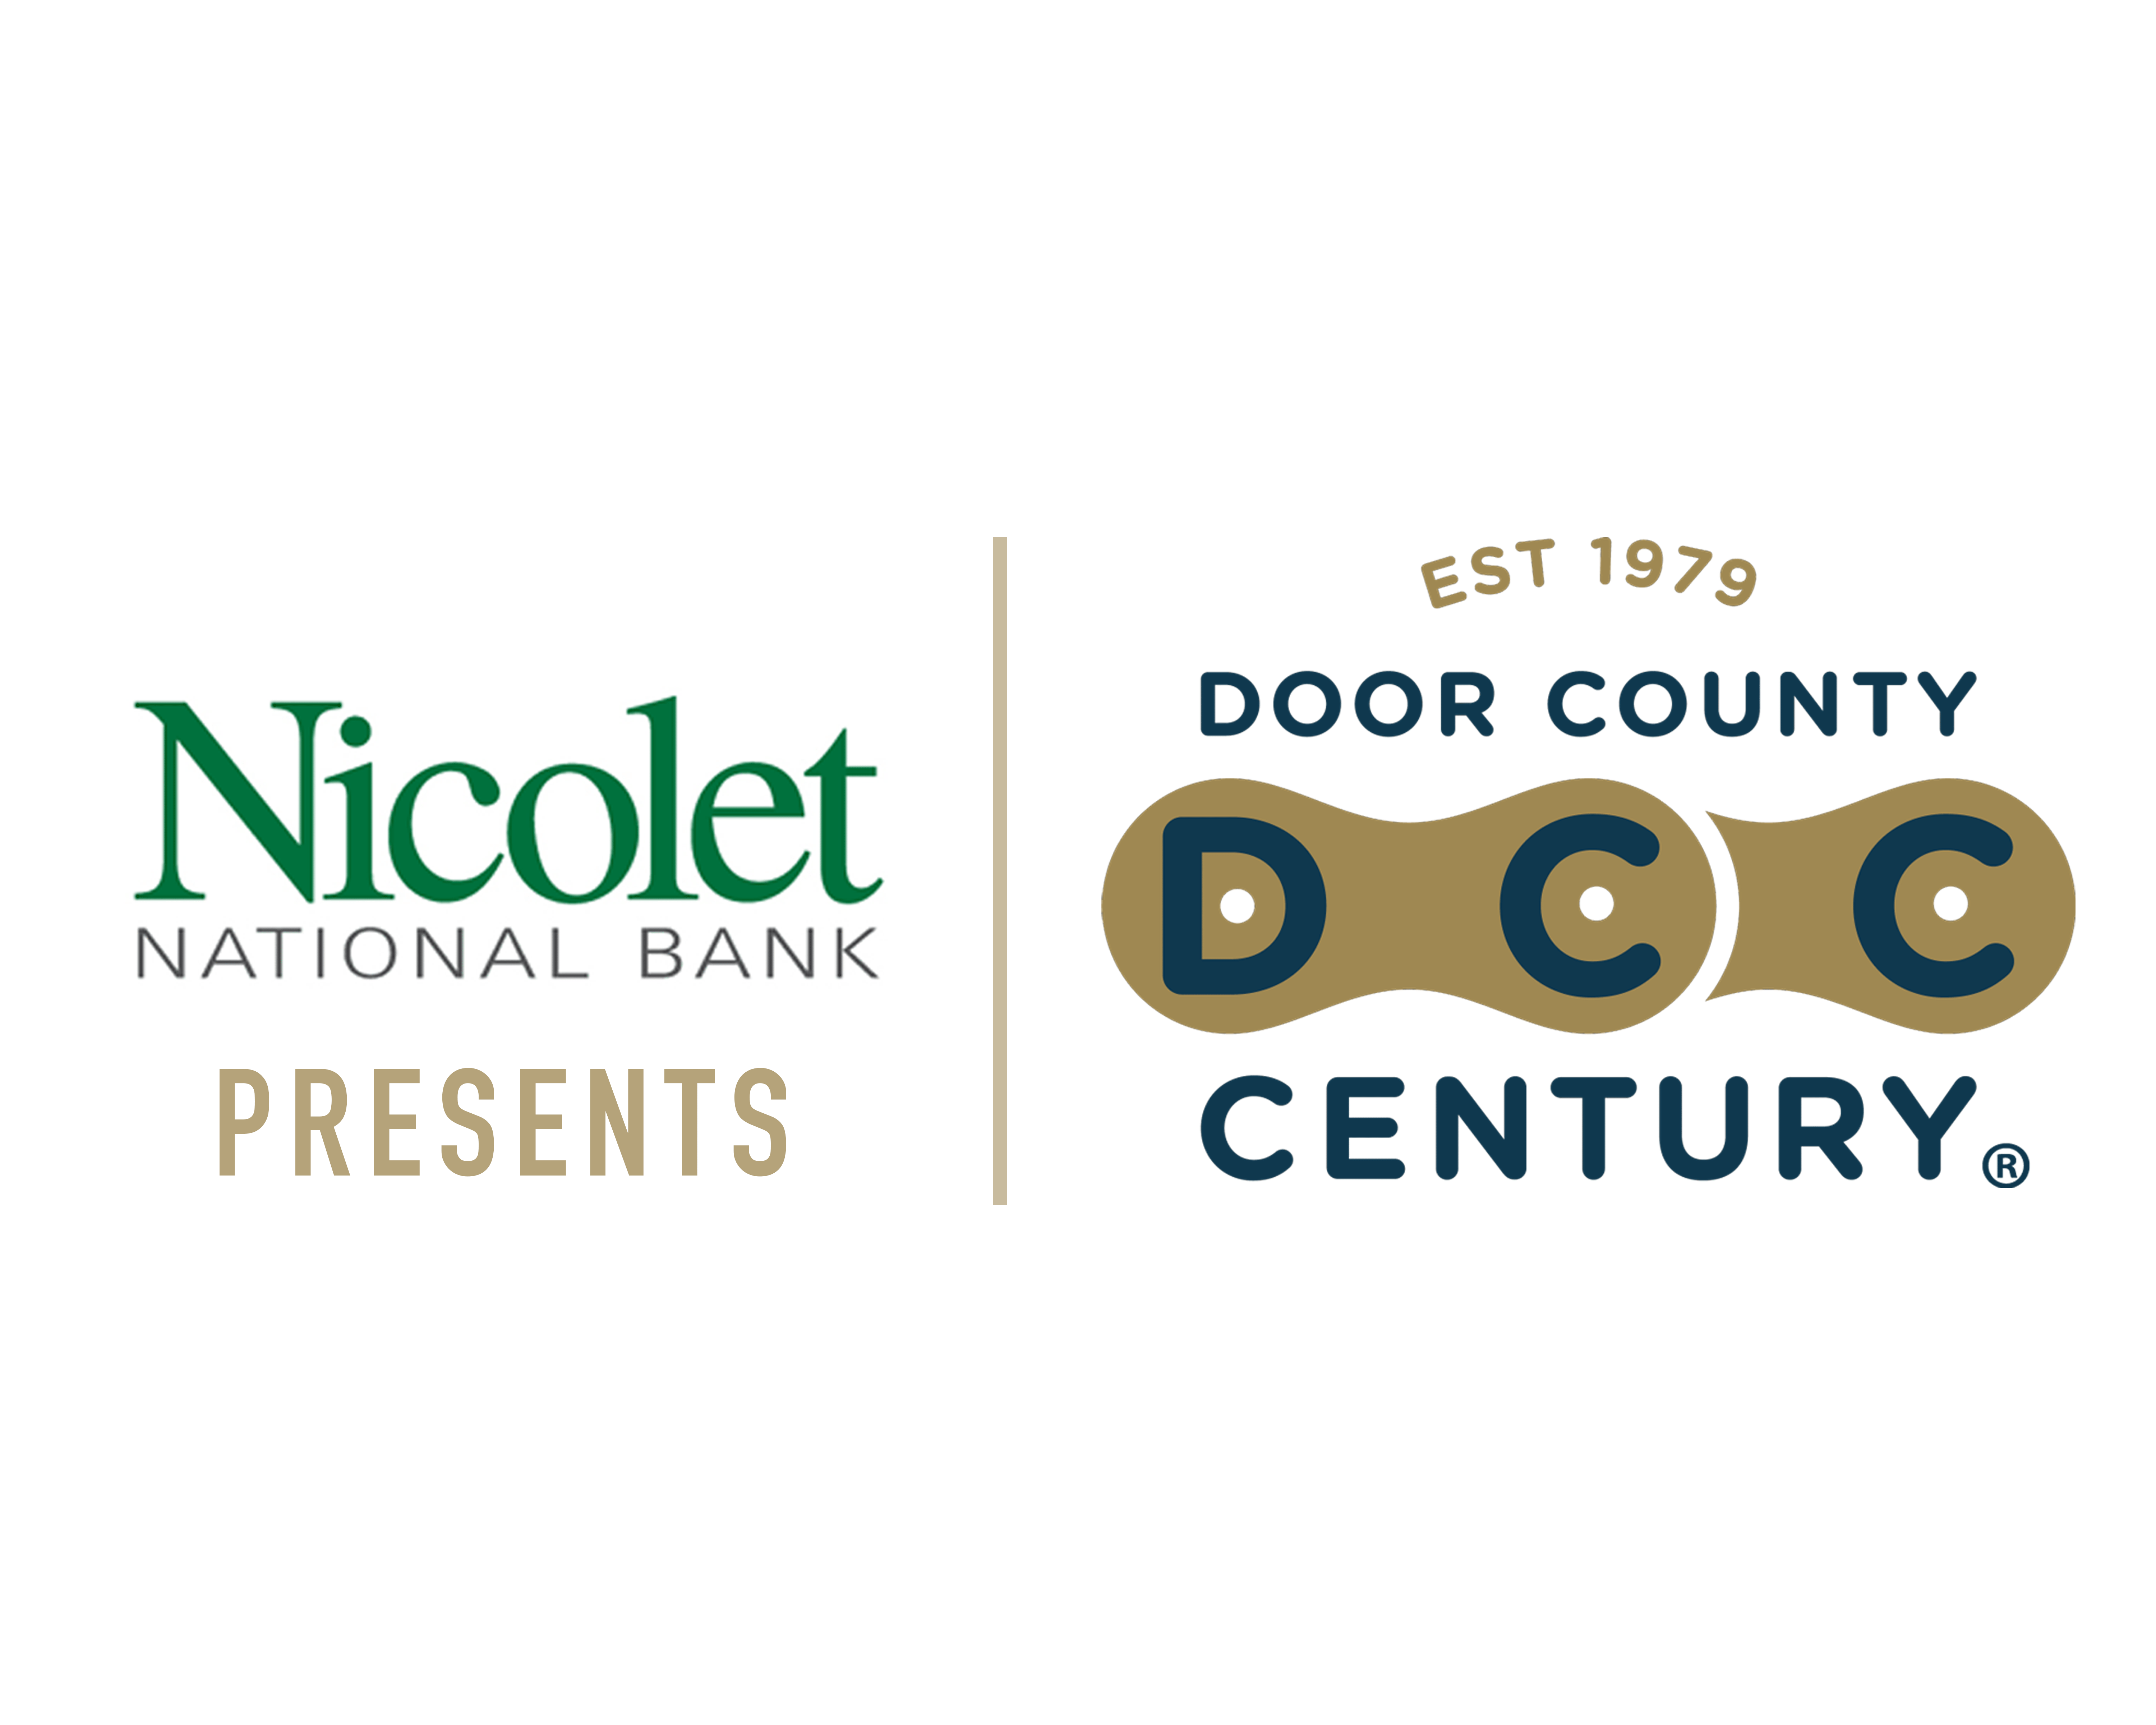 Door County Century-The DCC